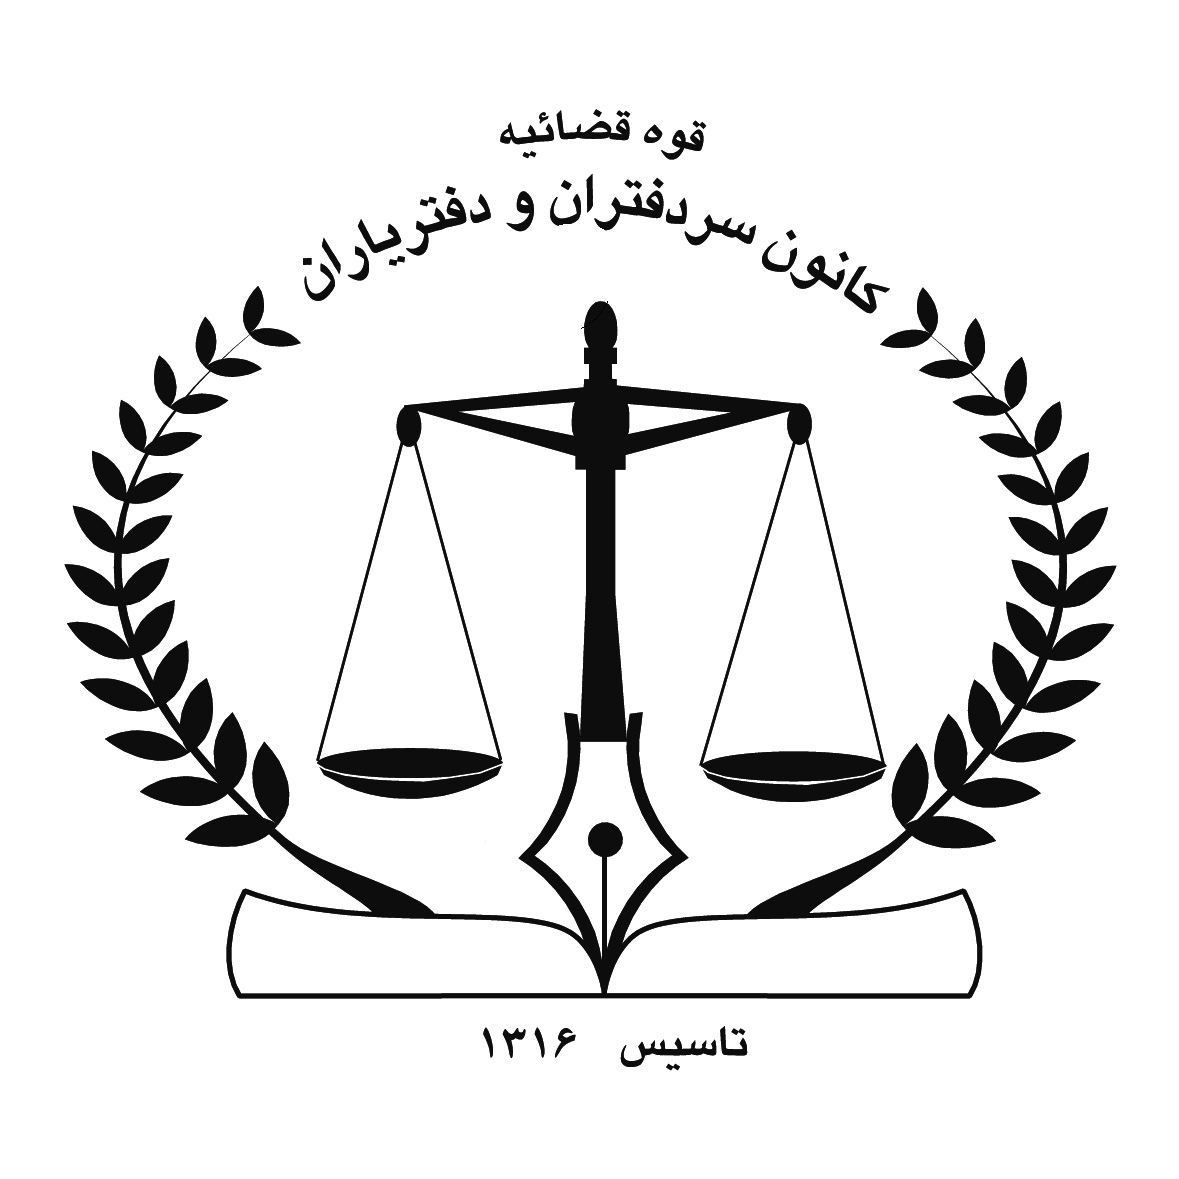 نشانی اداره کل ثبت اسناد و املاک استان تهران
